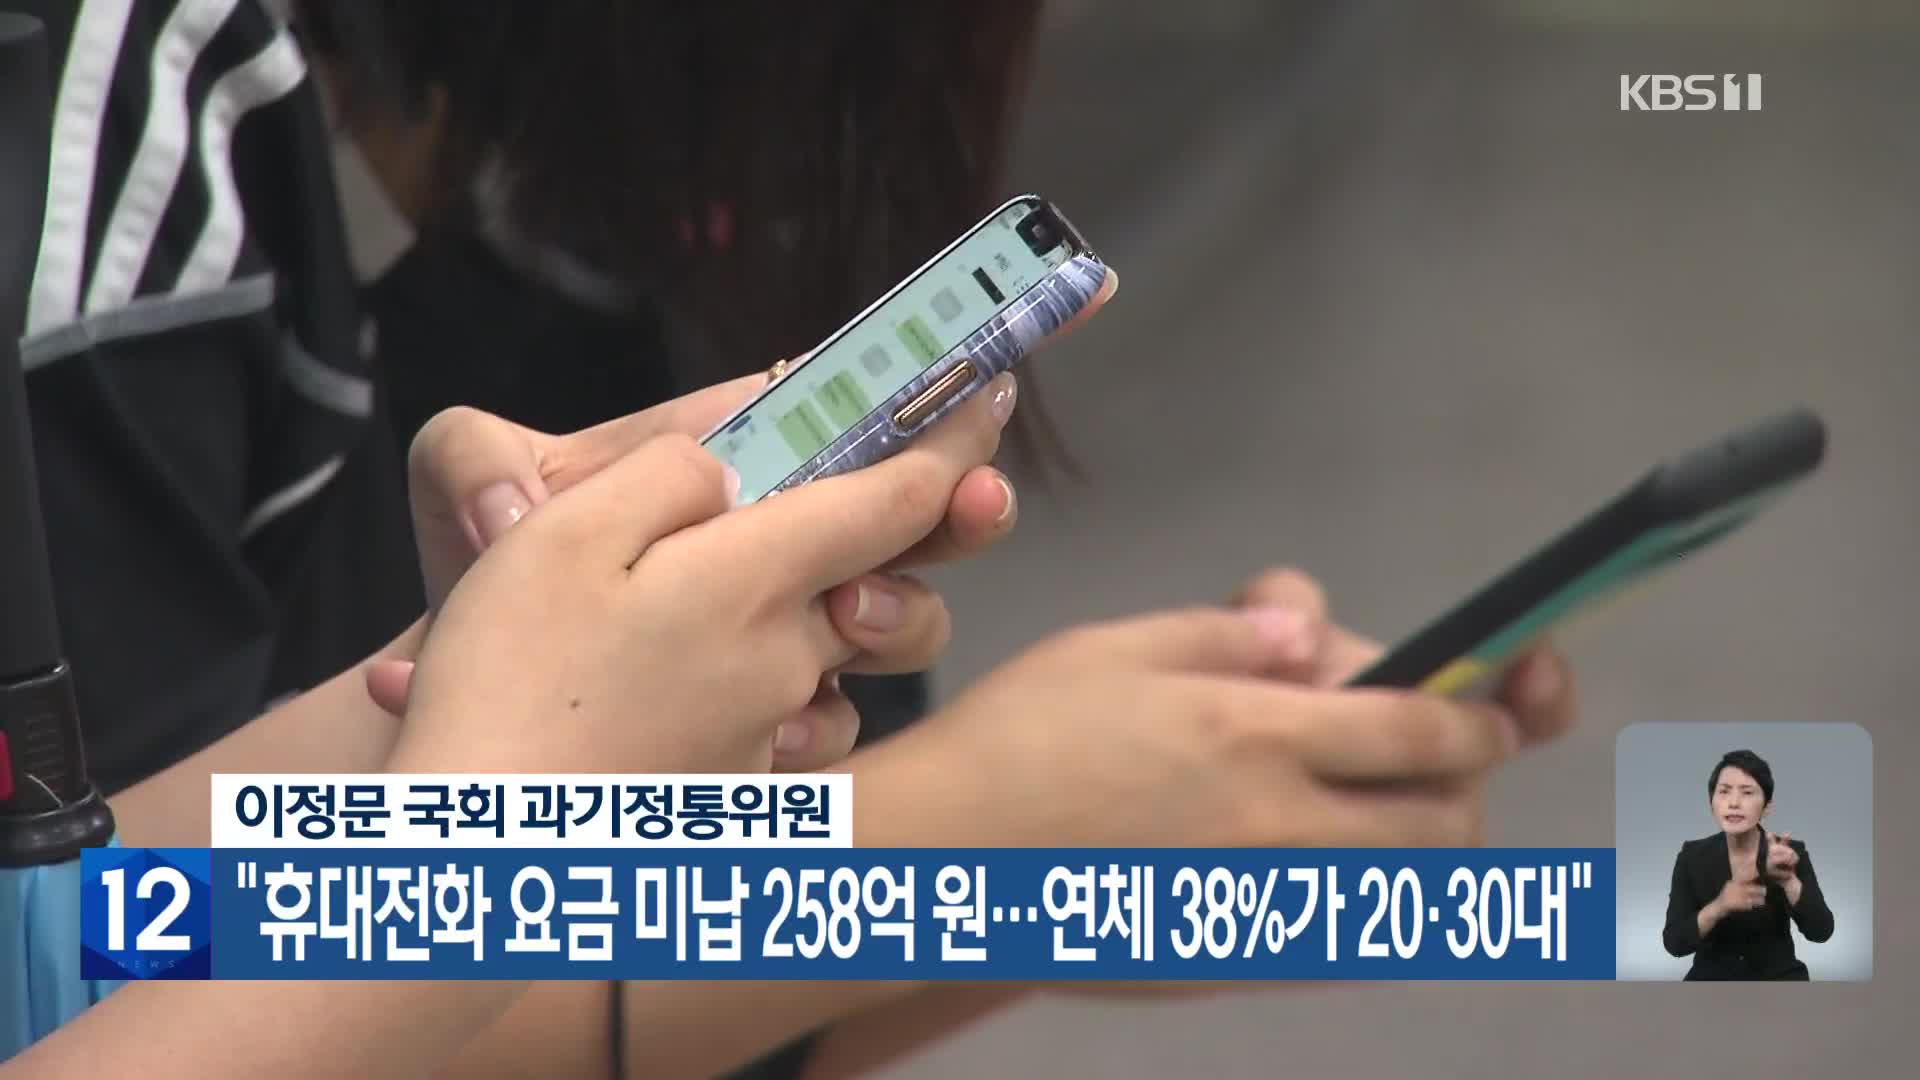 “휴대전화 요금 미납 258억 원…연체 38%가 20·30대”